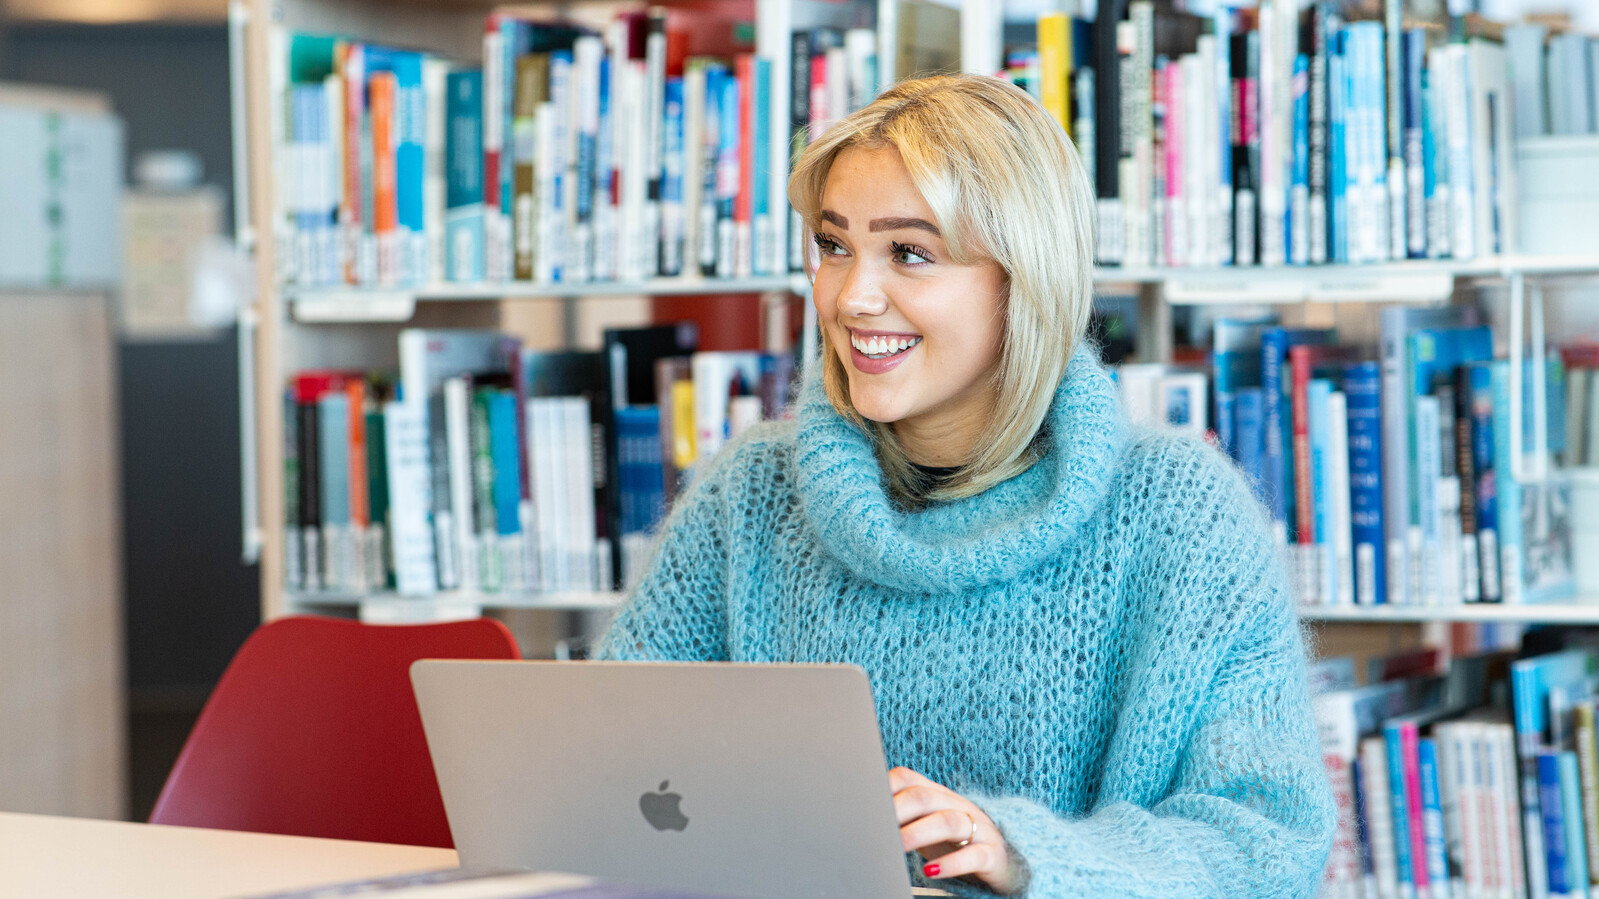 Smilende kvinne studerer på biblioteket, med en macbook fremfor seg, mange bøker i bakgrunn. Har blondt hår og en strikket genser med krage i turkis.